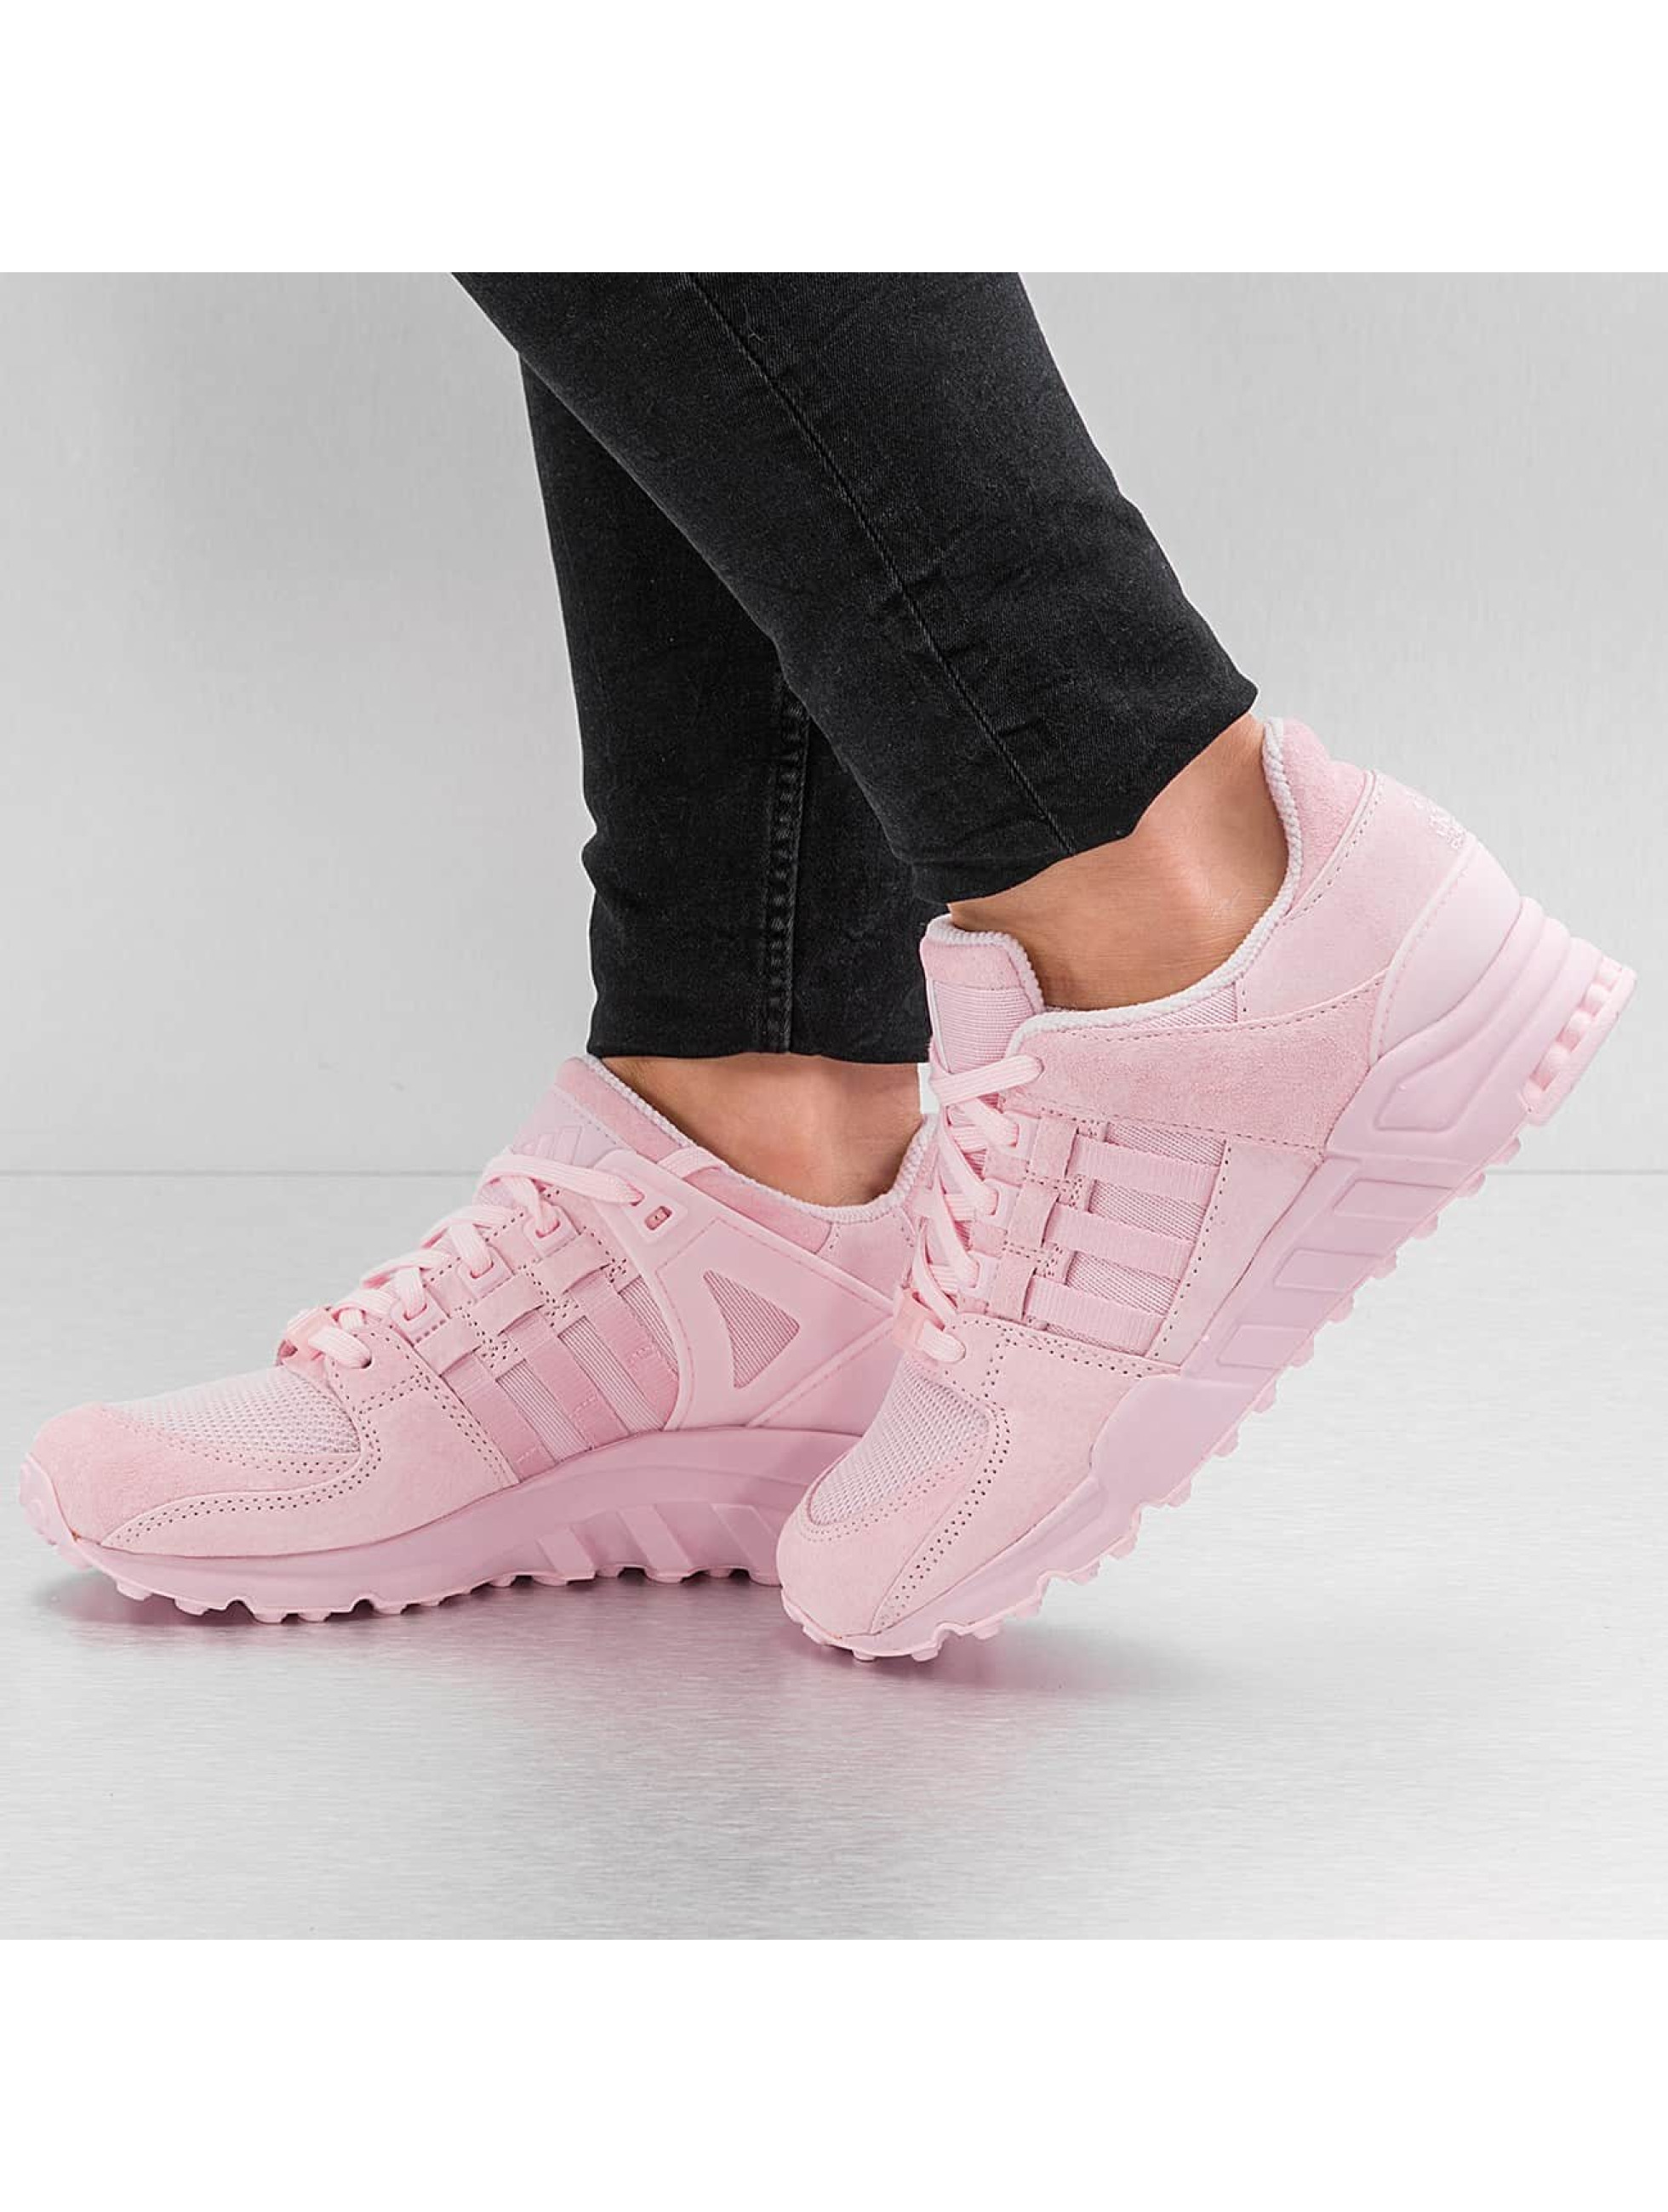 Sneaker Equipment in pink